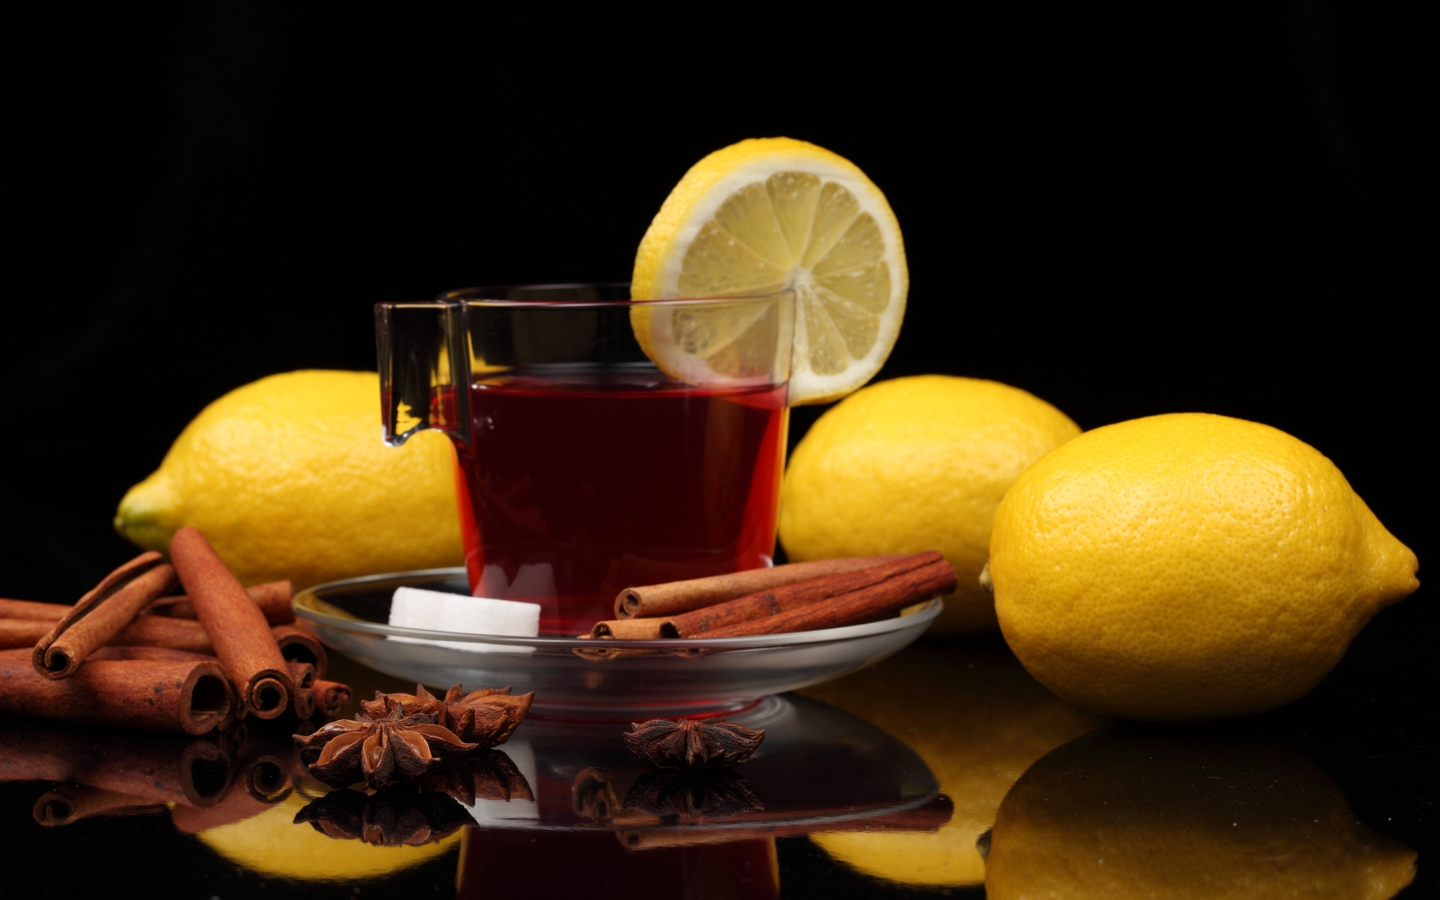 Cinnamon And Lemon Tea for 1440 x 900 widescreen resolution